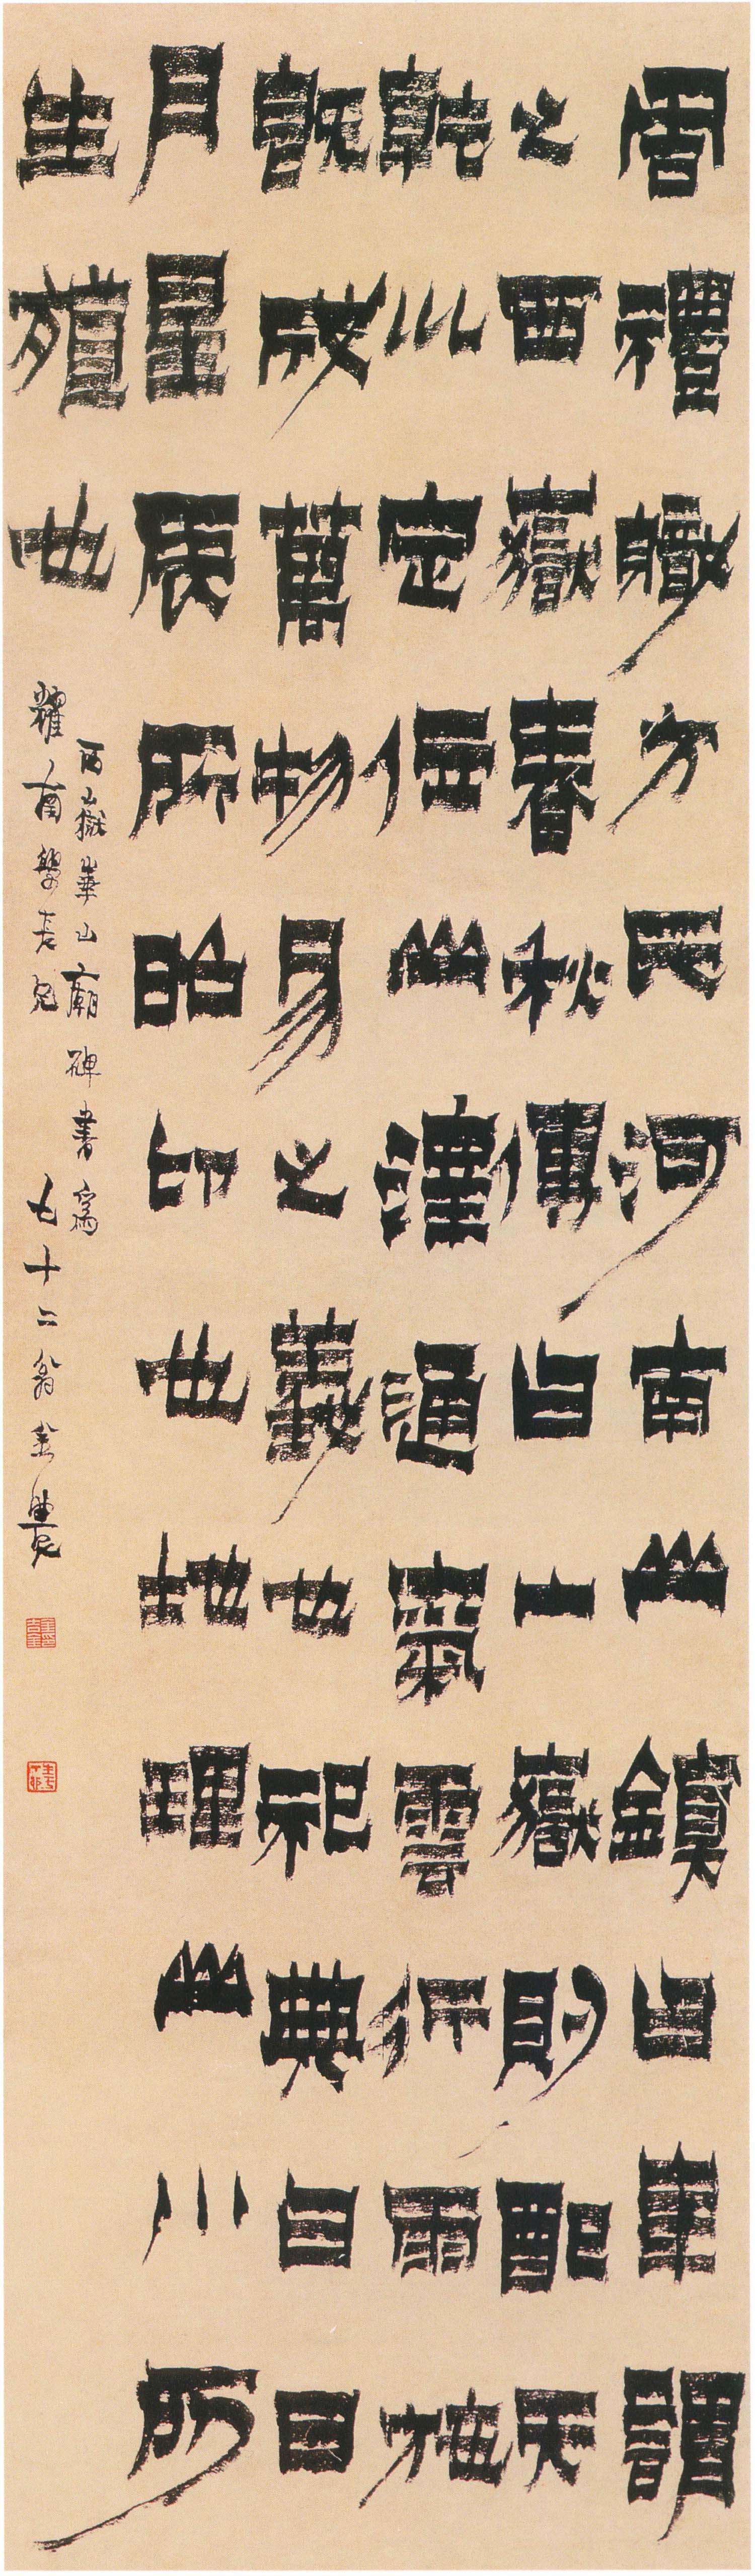 金农隶书《节临华山庙碑》-上海博物馆藏(图1)